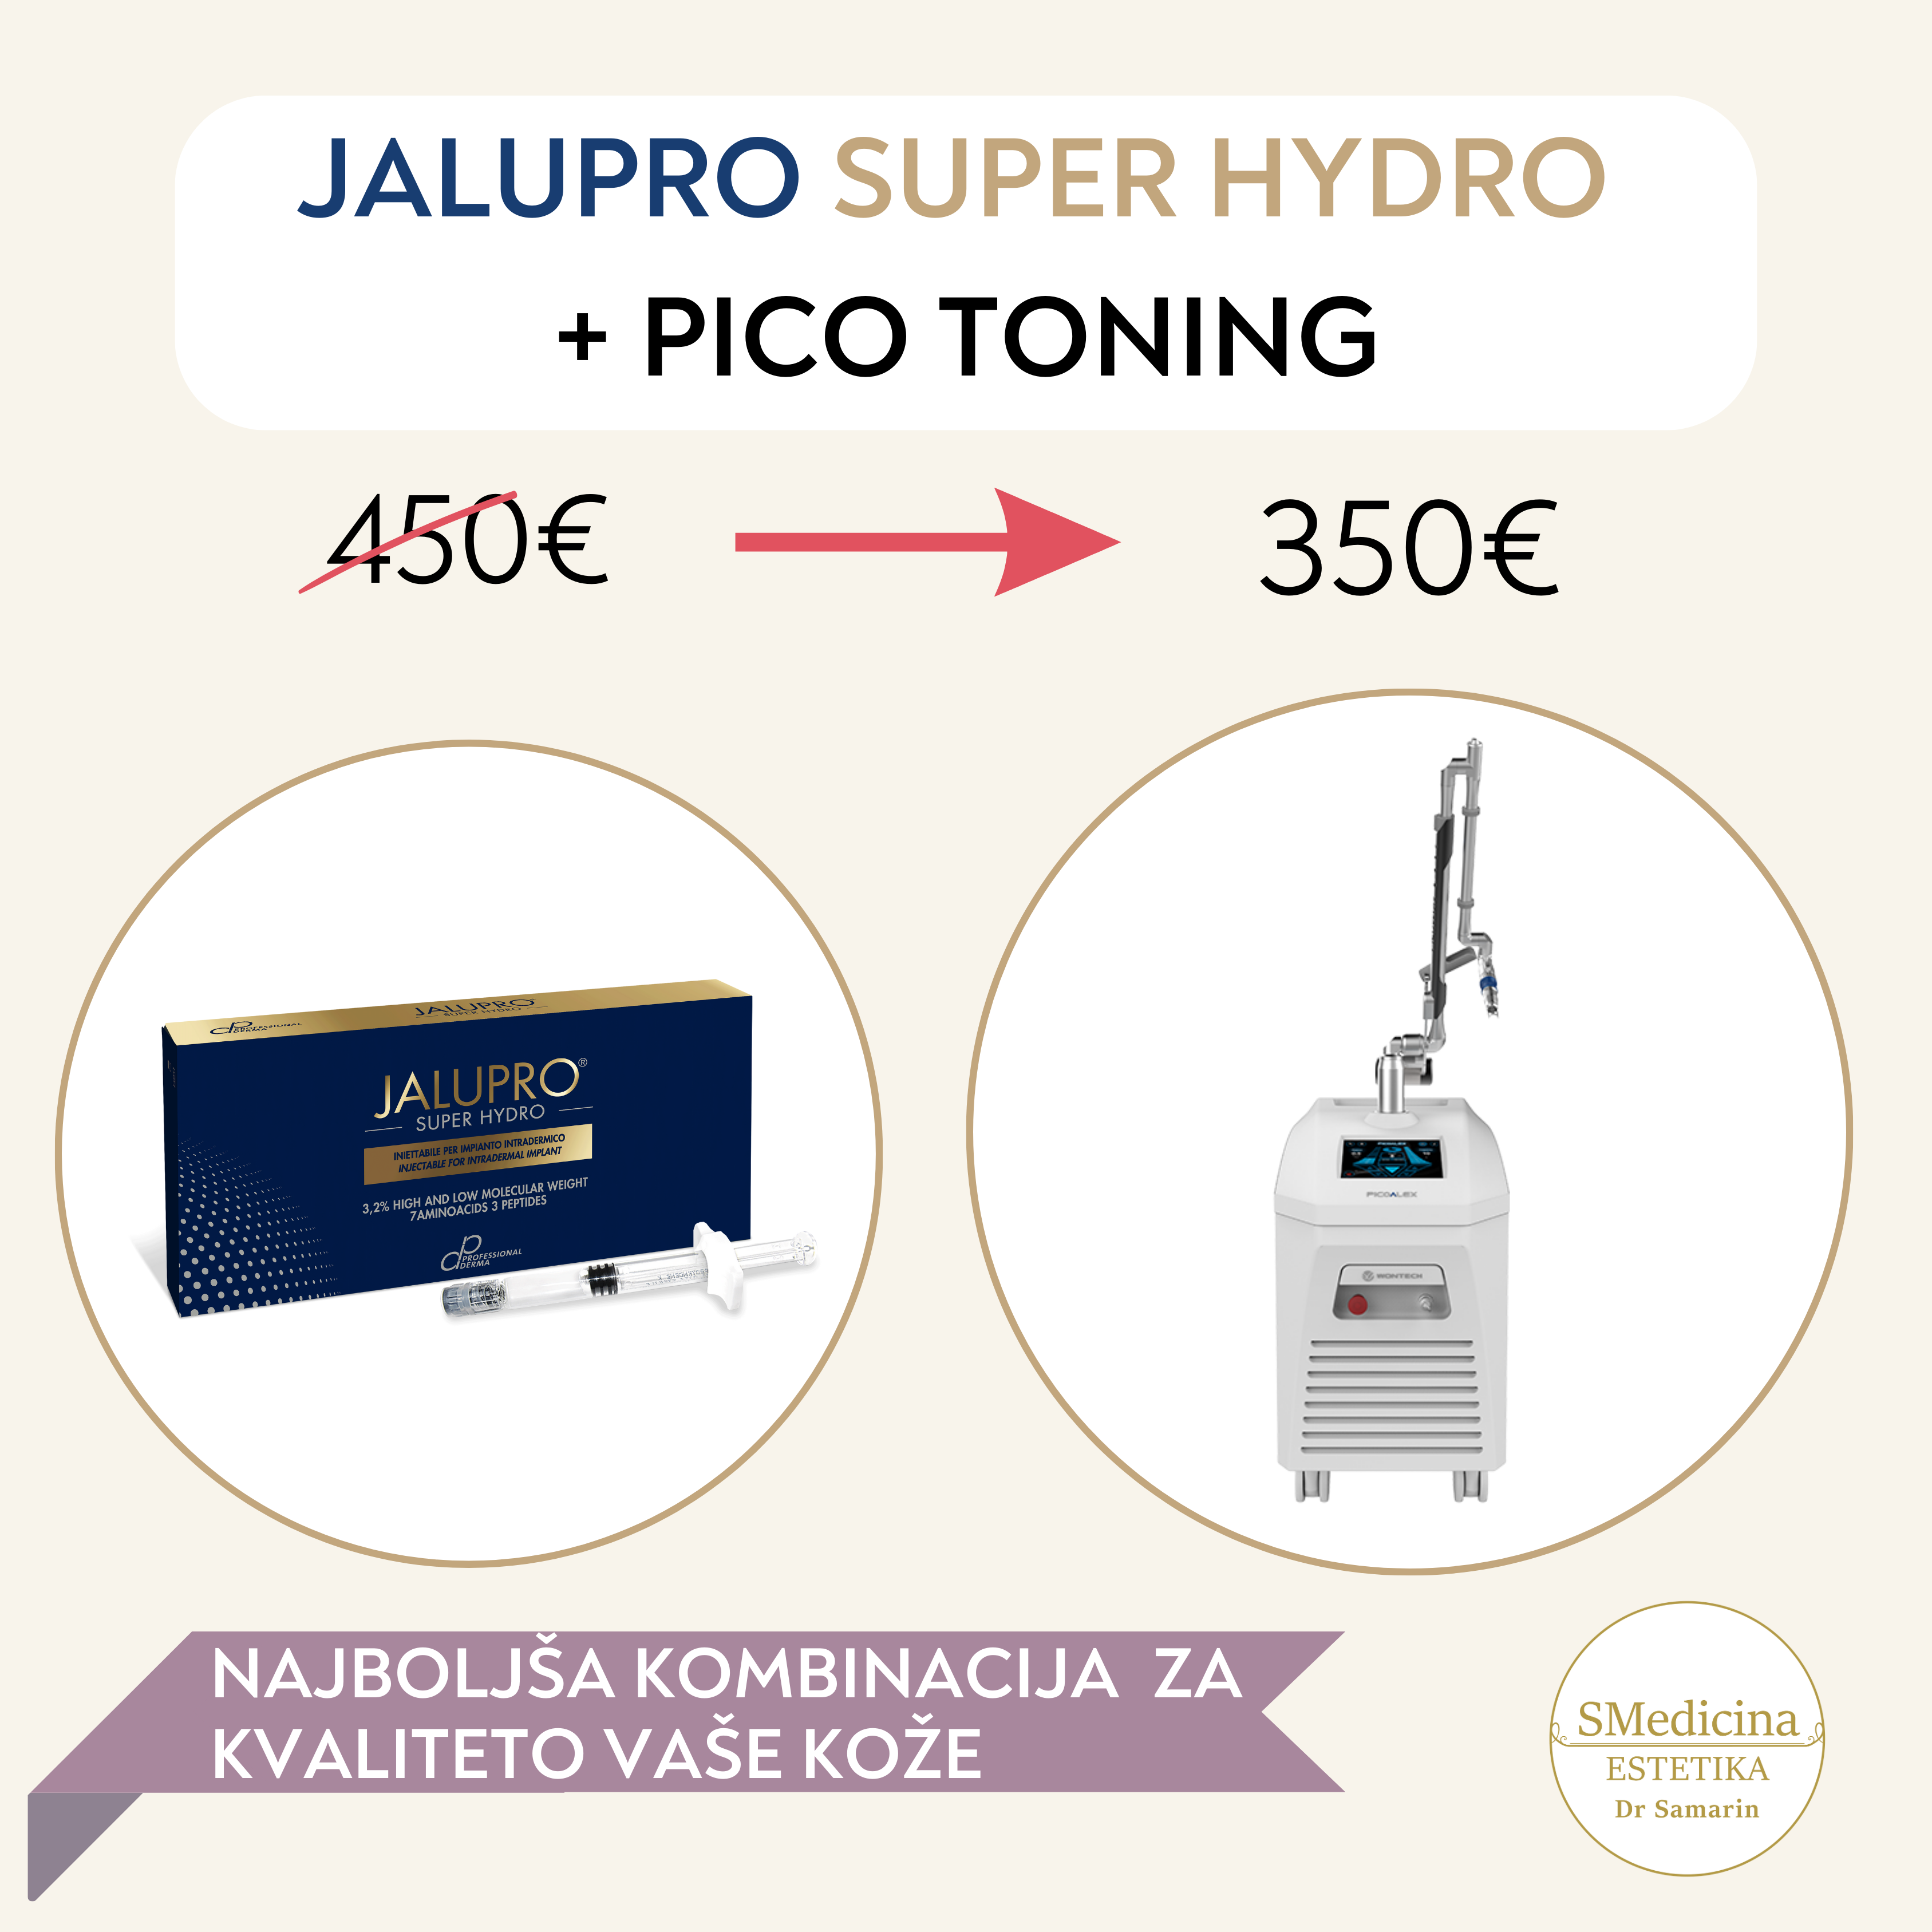 Jalupro Super Hydro + Pico Toning